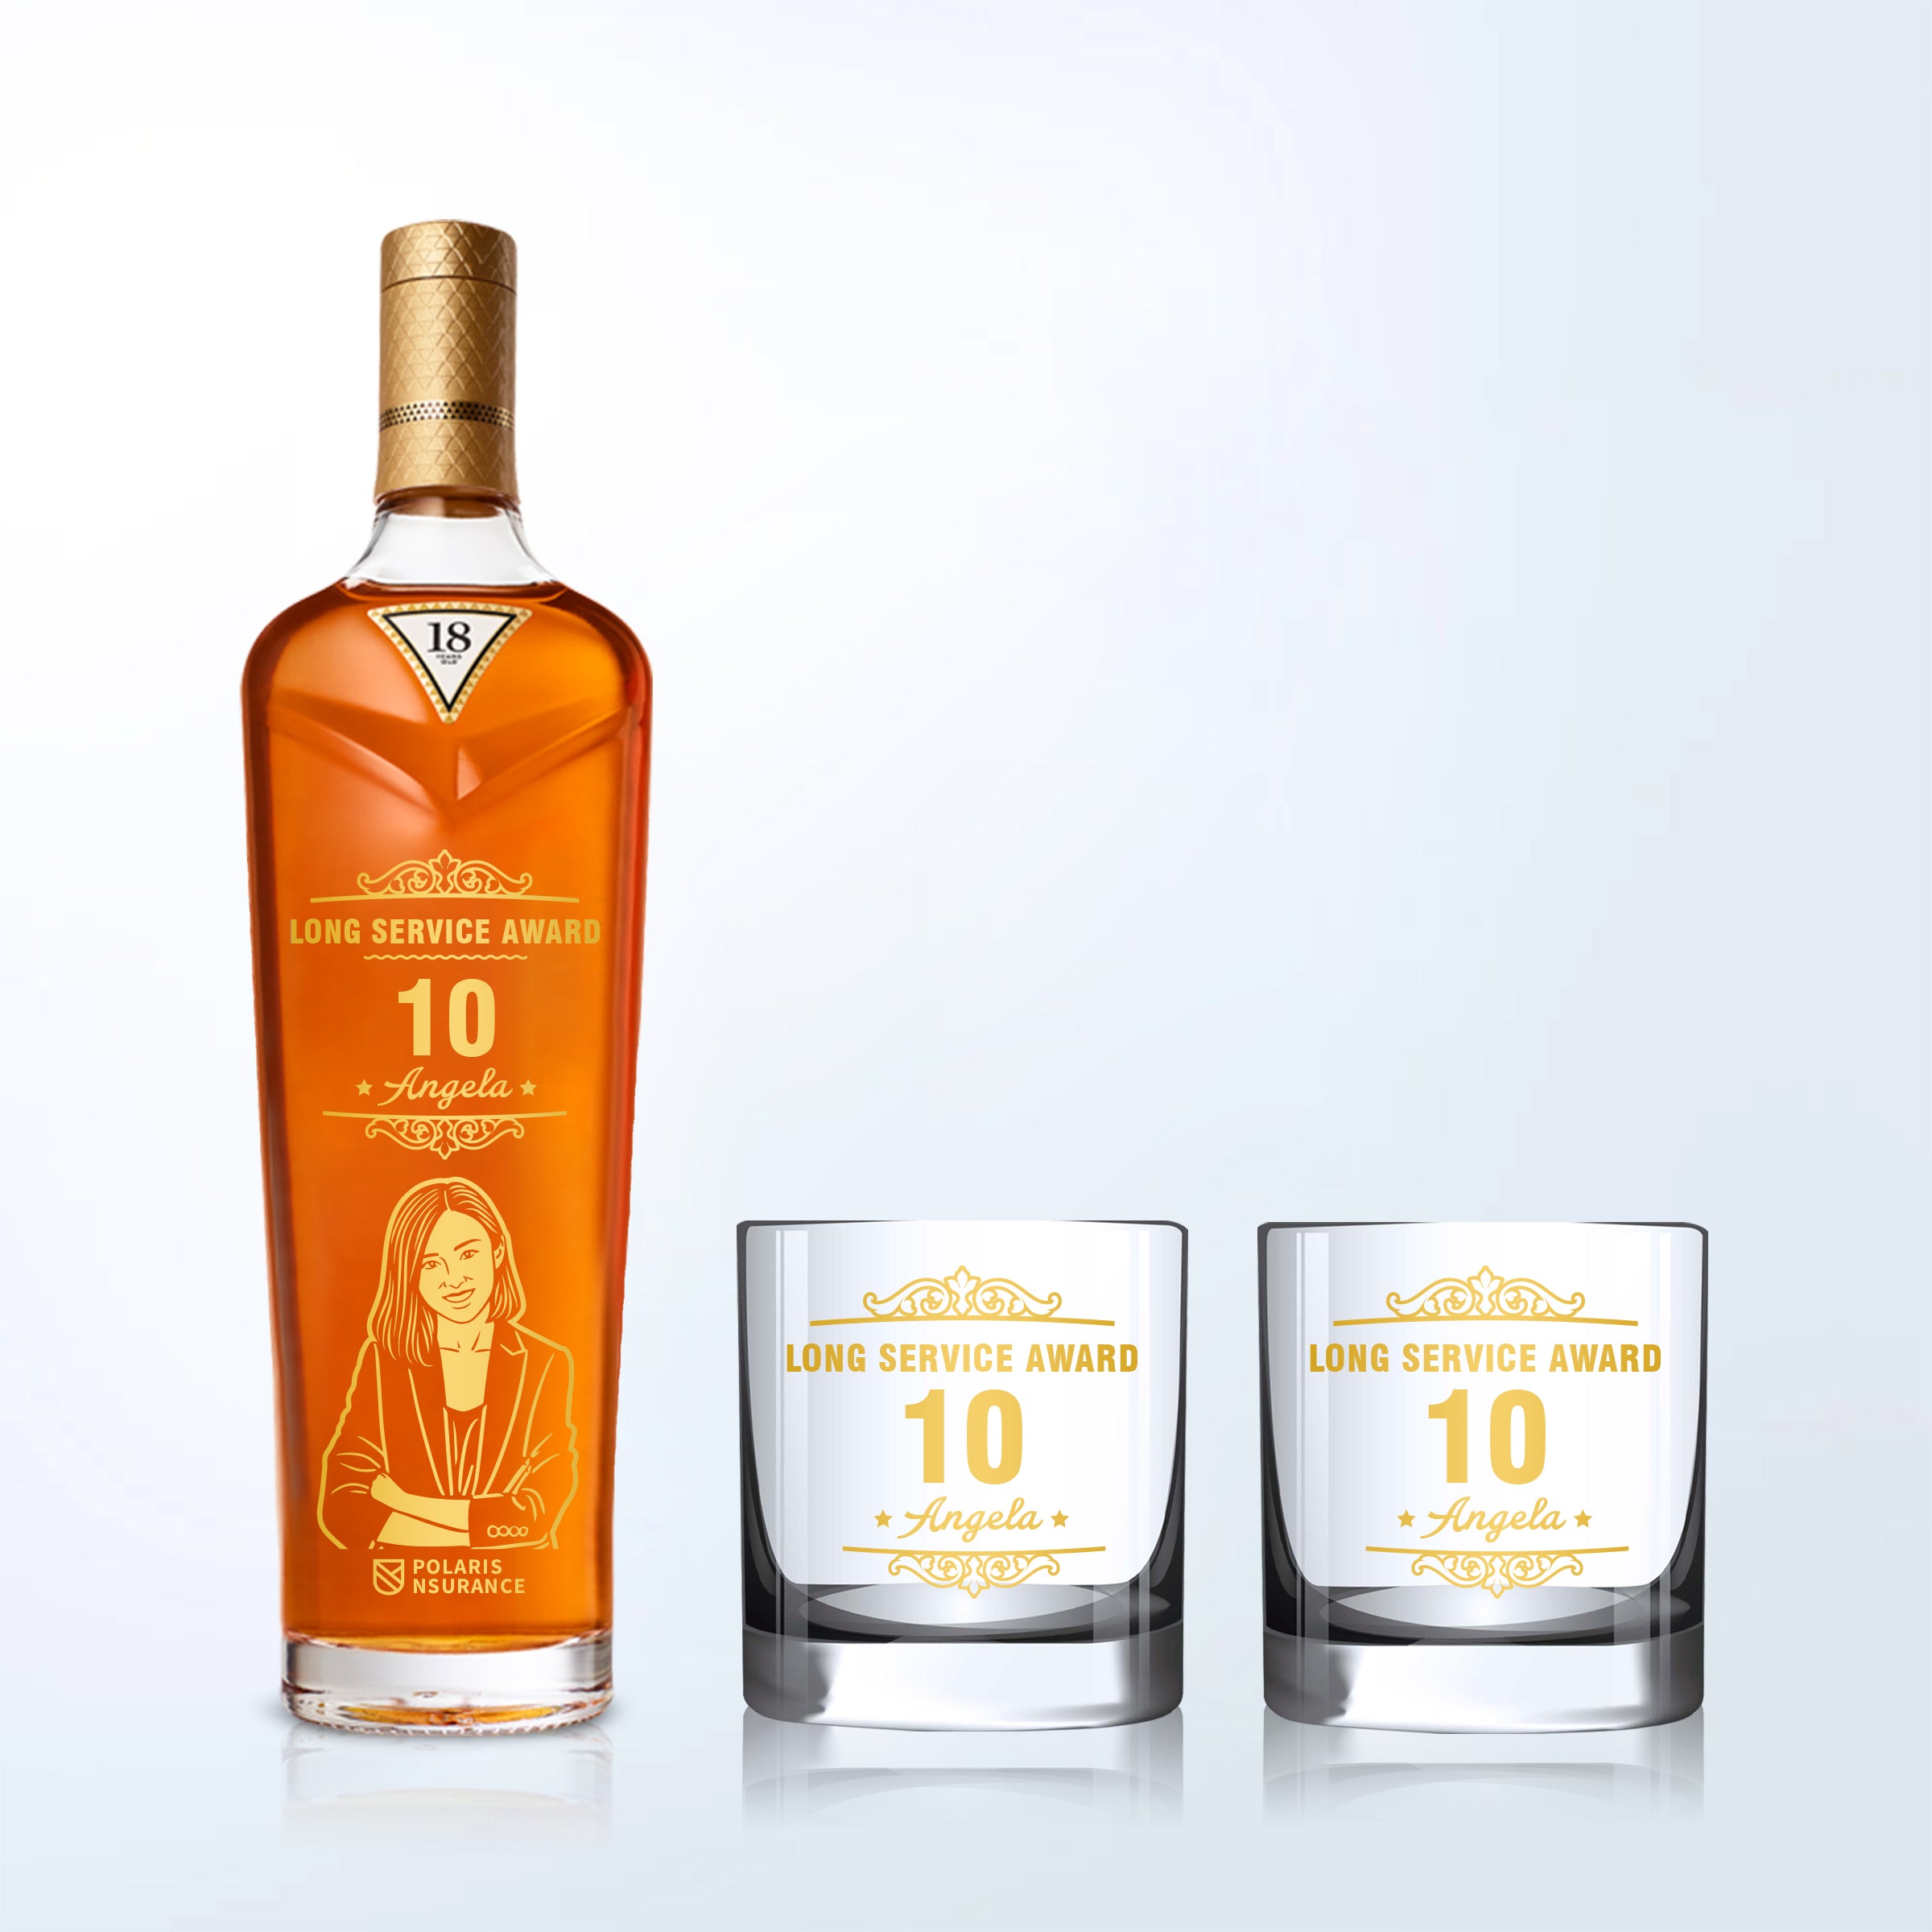 企業高端禮品 定制麥卡倫雪莉桶18年威士忌Macallan Sherry Oak 18 2021& Bottega Whisky Glasses Gift Set with Engraving - Design Your Own Wine